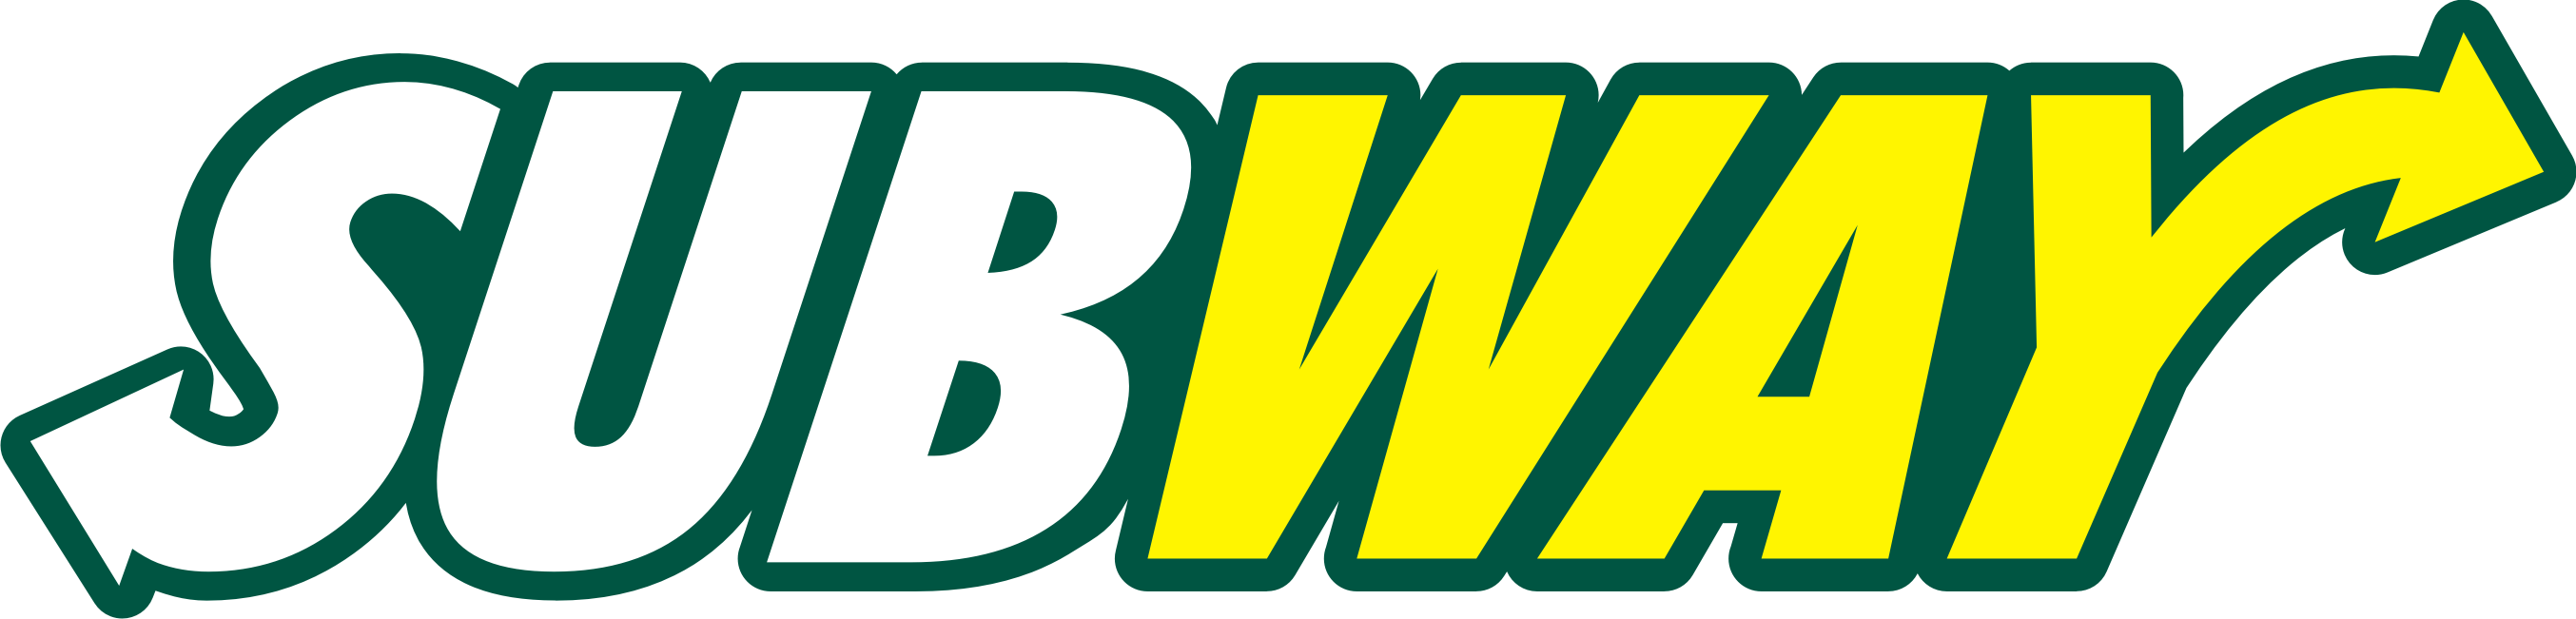 Subway Logo Vector BWA, download BWA Vector Logos, Brand logo